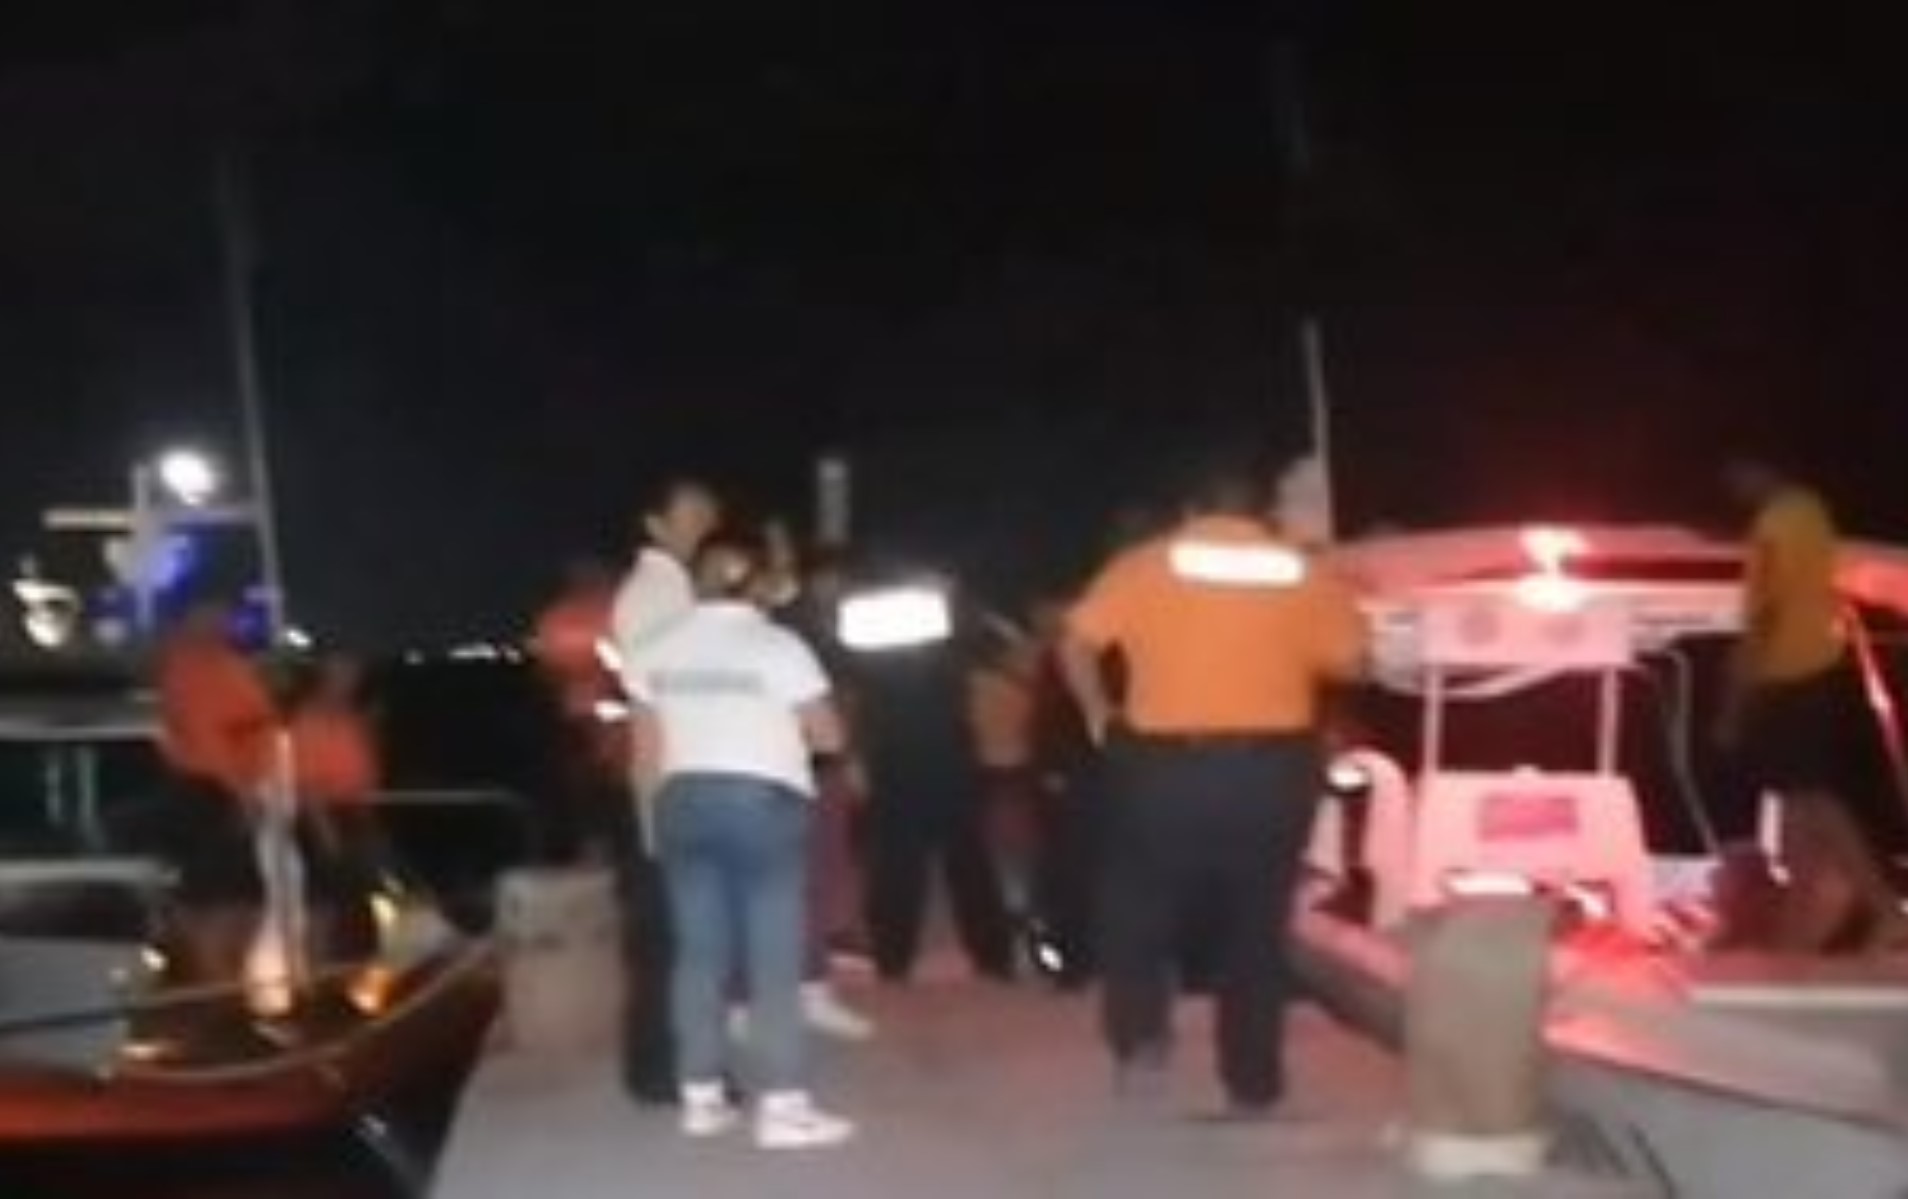 Oleaje hunde embarcación en Isla Mujeres, reportan 4 muertos